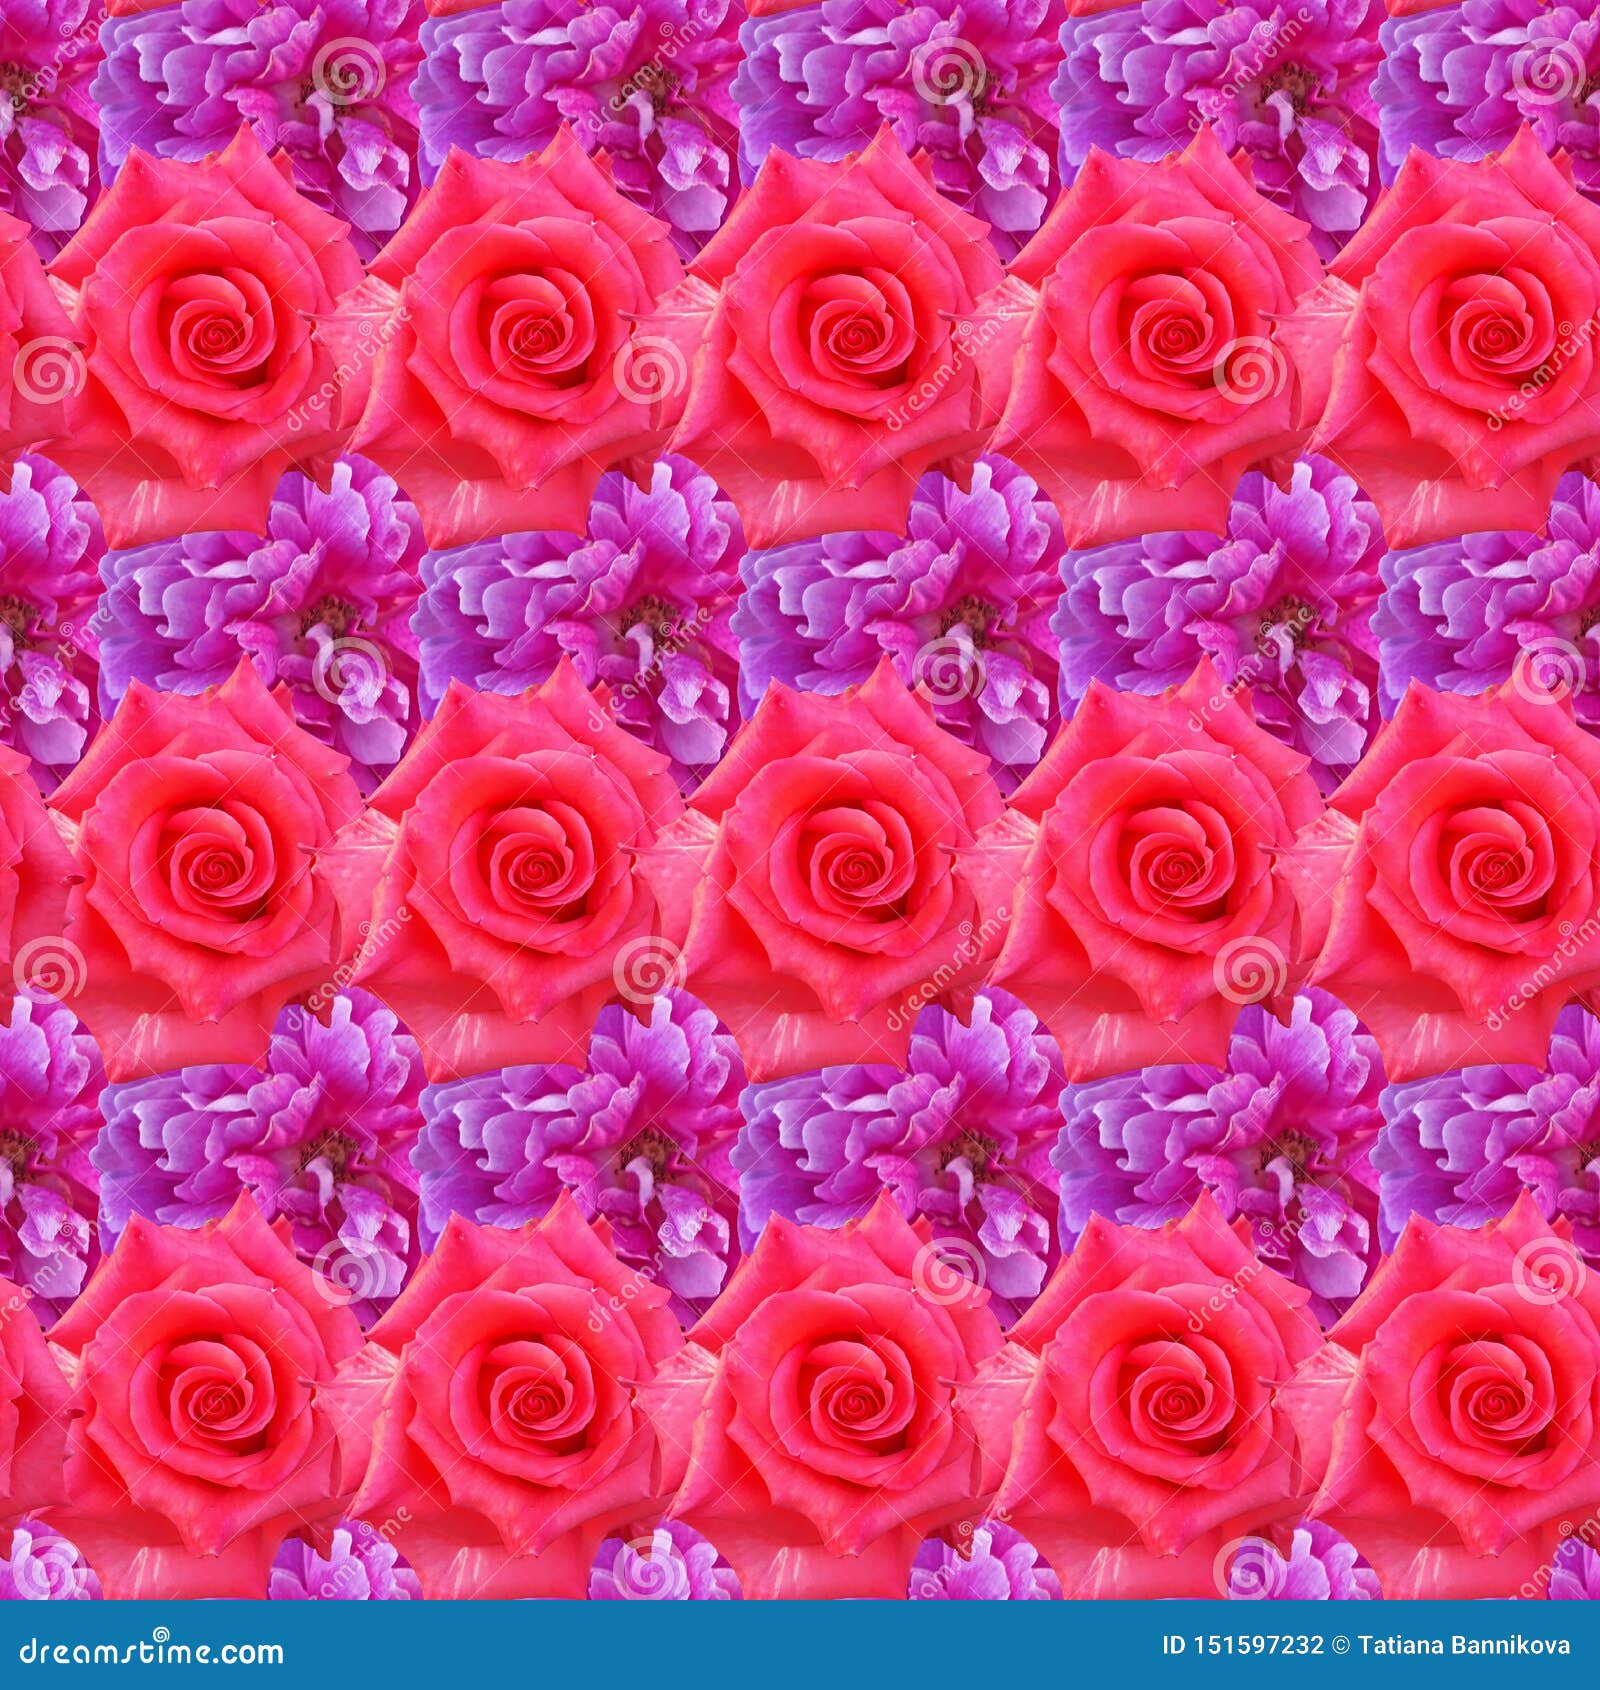 Những hình nền hoa hồng màu sắc đẹp sẽ làm cho màn hình điện thoại hoặc máy tính của bạn trở nên tràn đầy sức sống và màu sắc. Hãy để chúng tôi giúp bạn tìm kiếm những hình nền hoa hồng màu sắc đẹp nhất để tôn lên vẻ đẹp và phong cách của bạn.